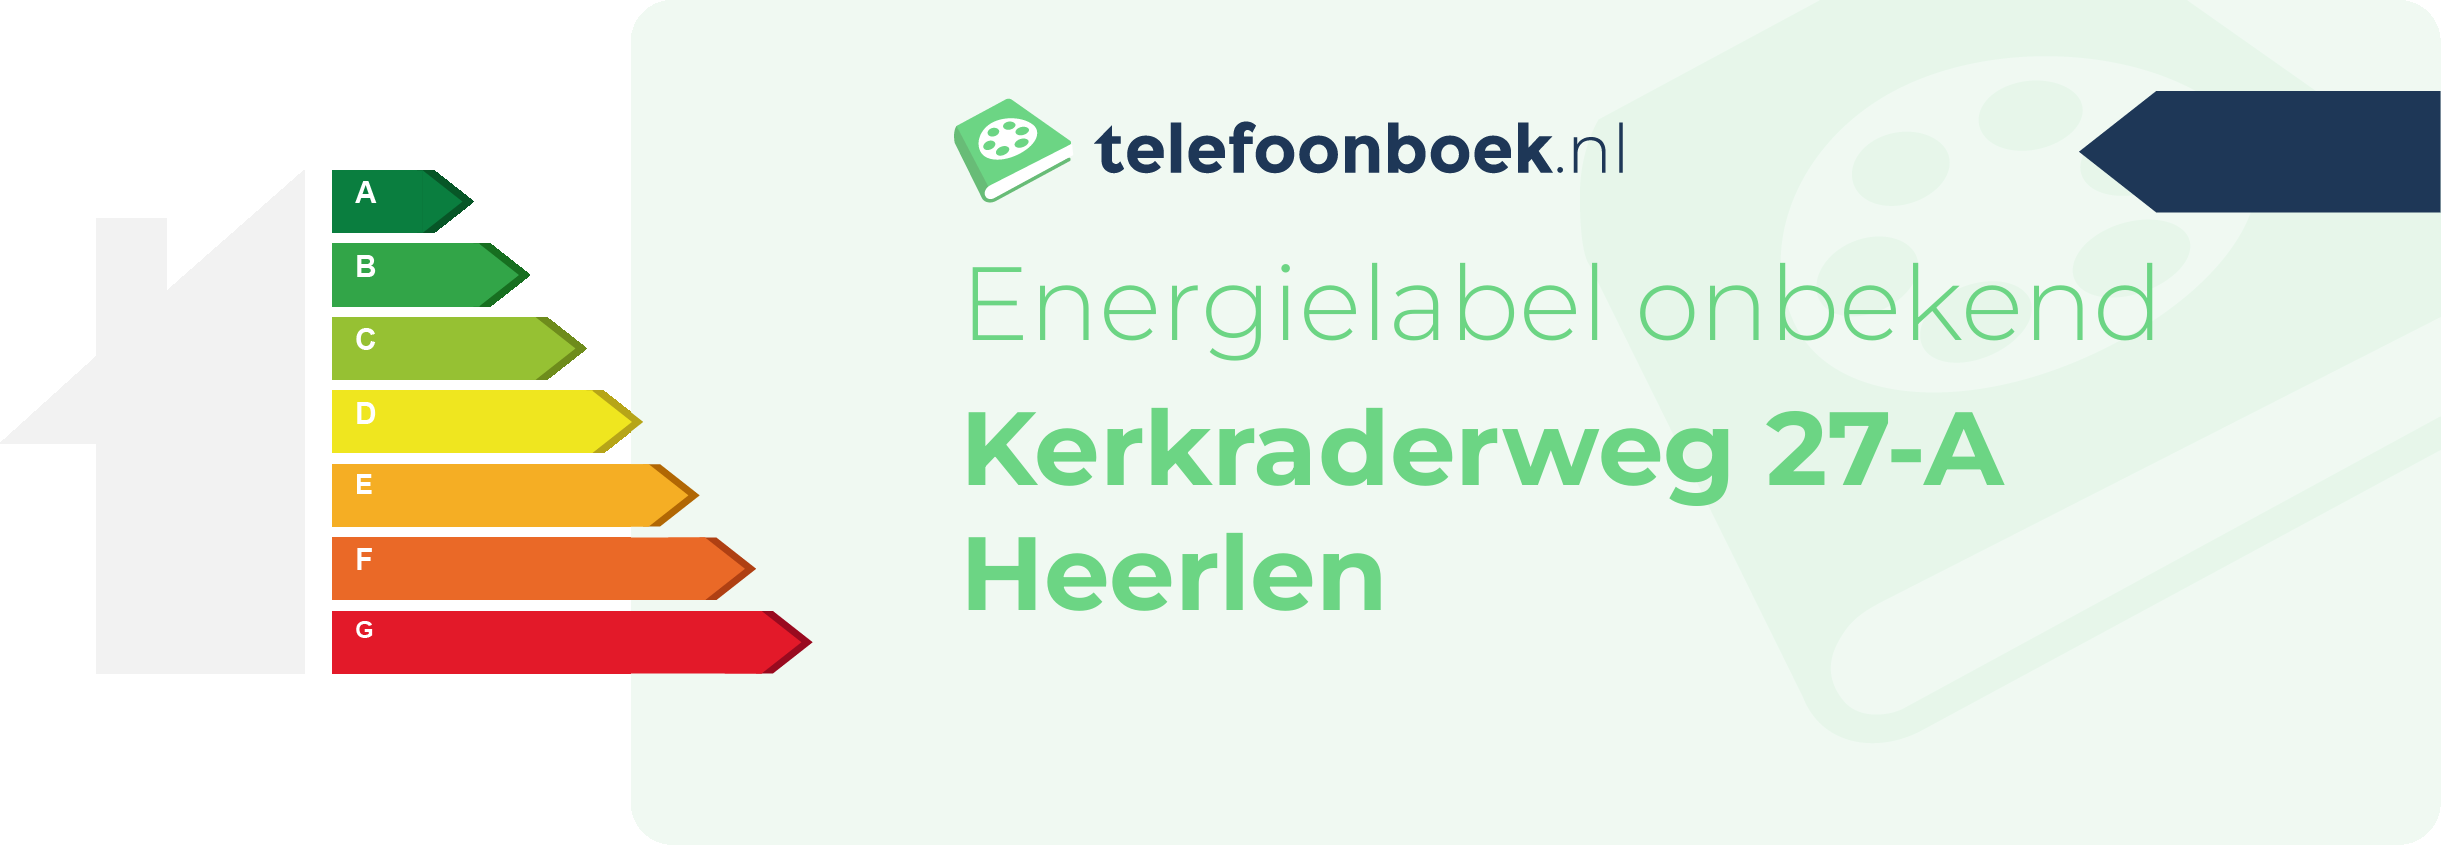 Energielabel Kerkraderweg 27-A Heerlen